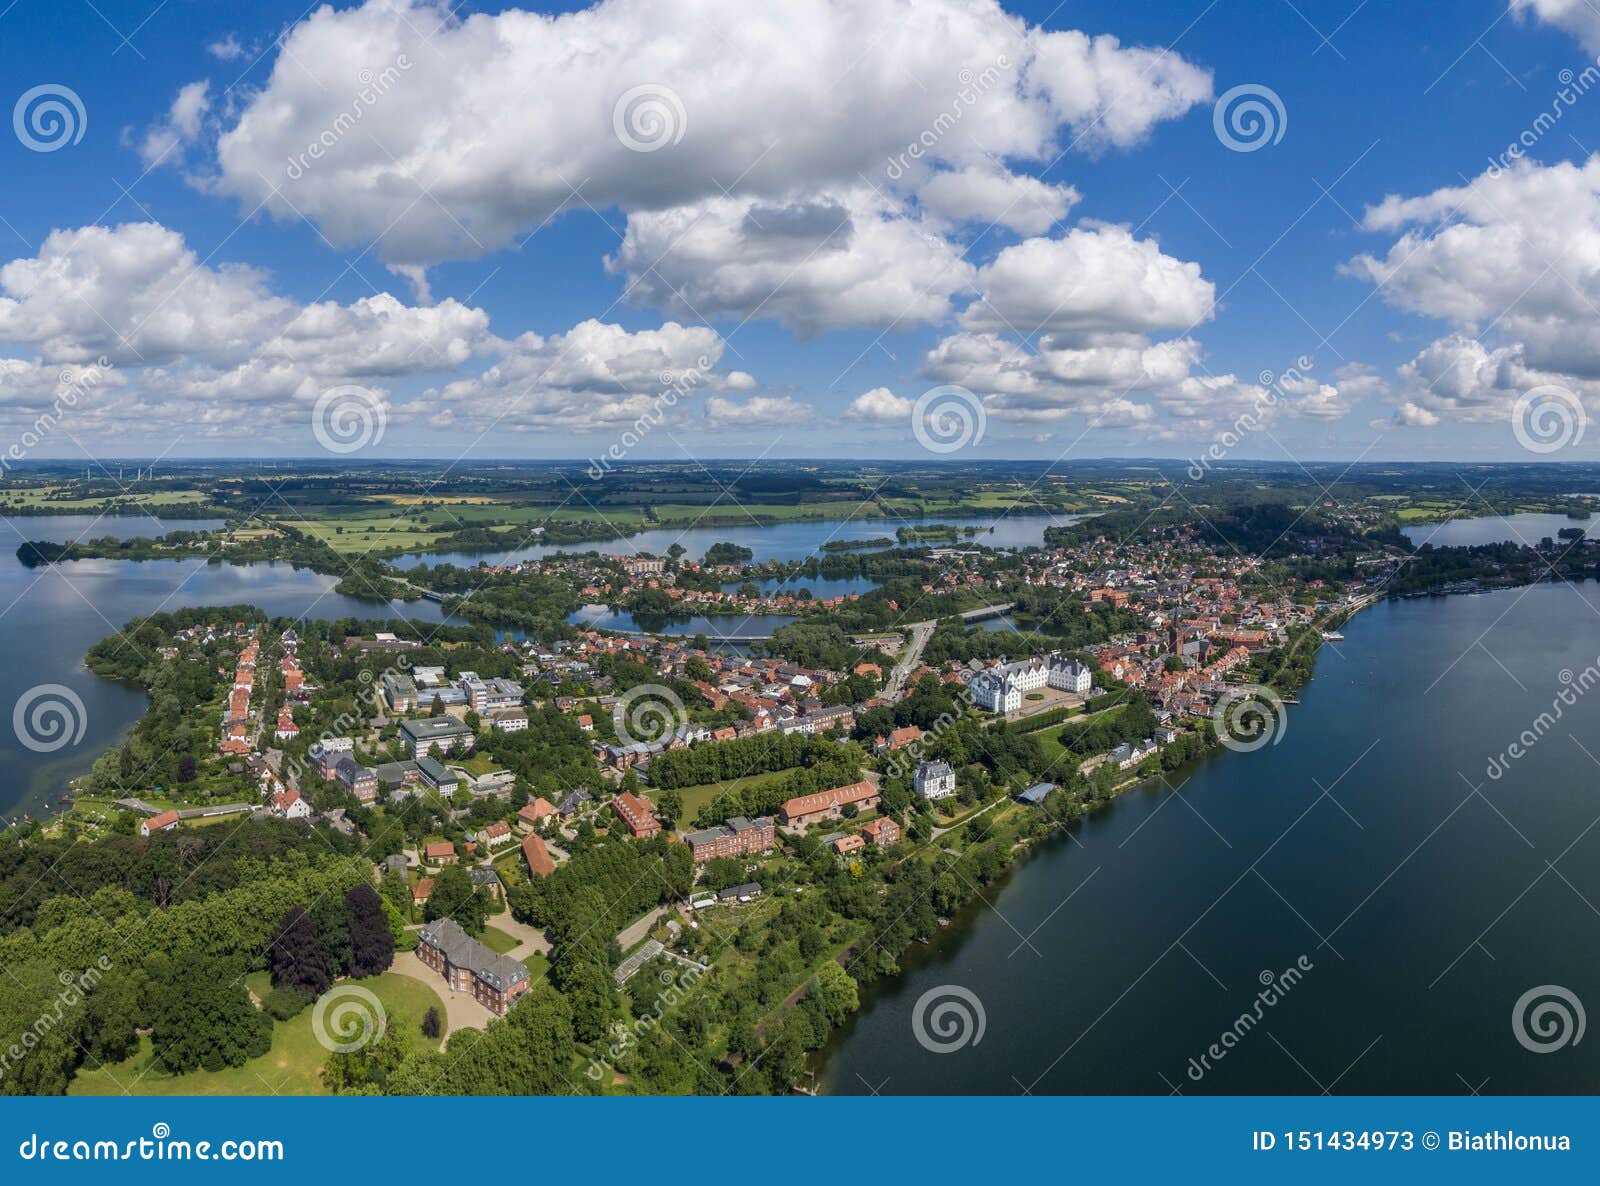 aerial view of ploen city in germany